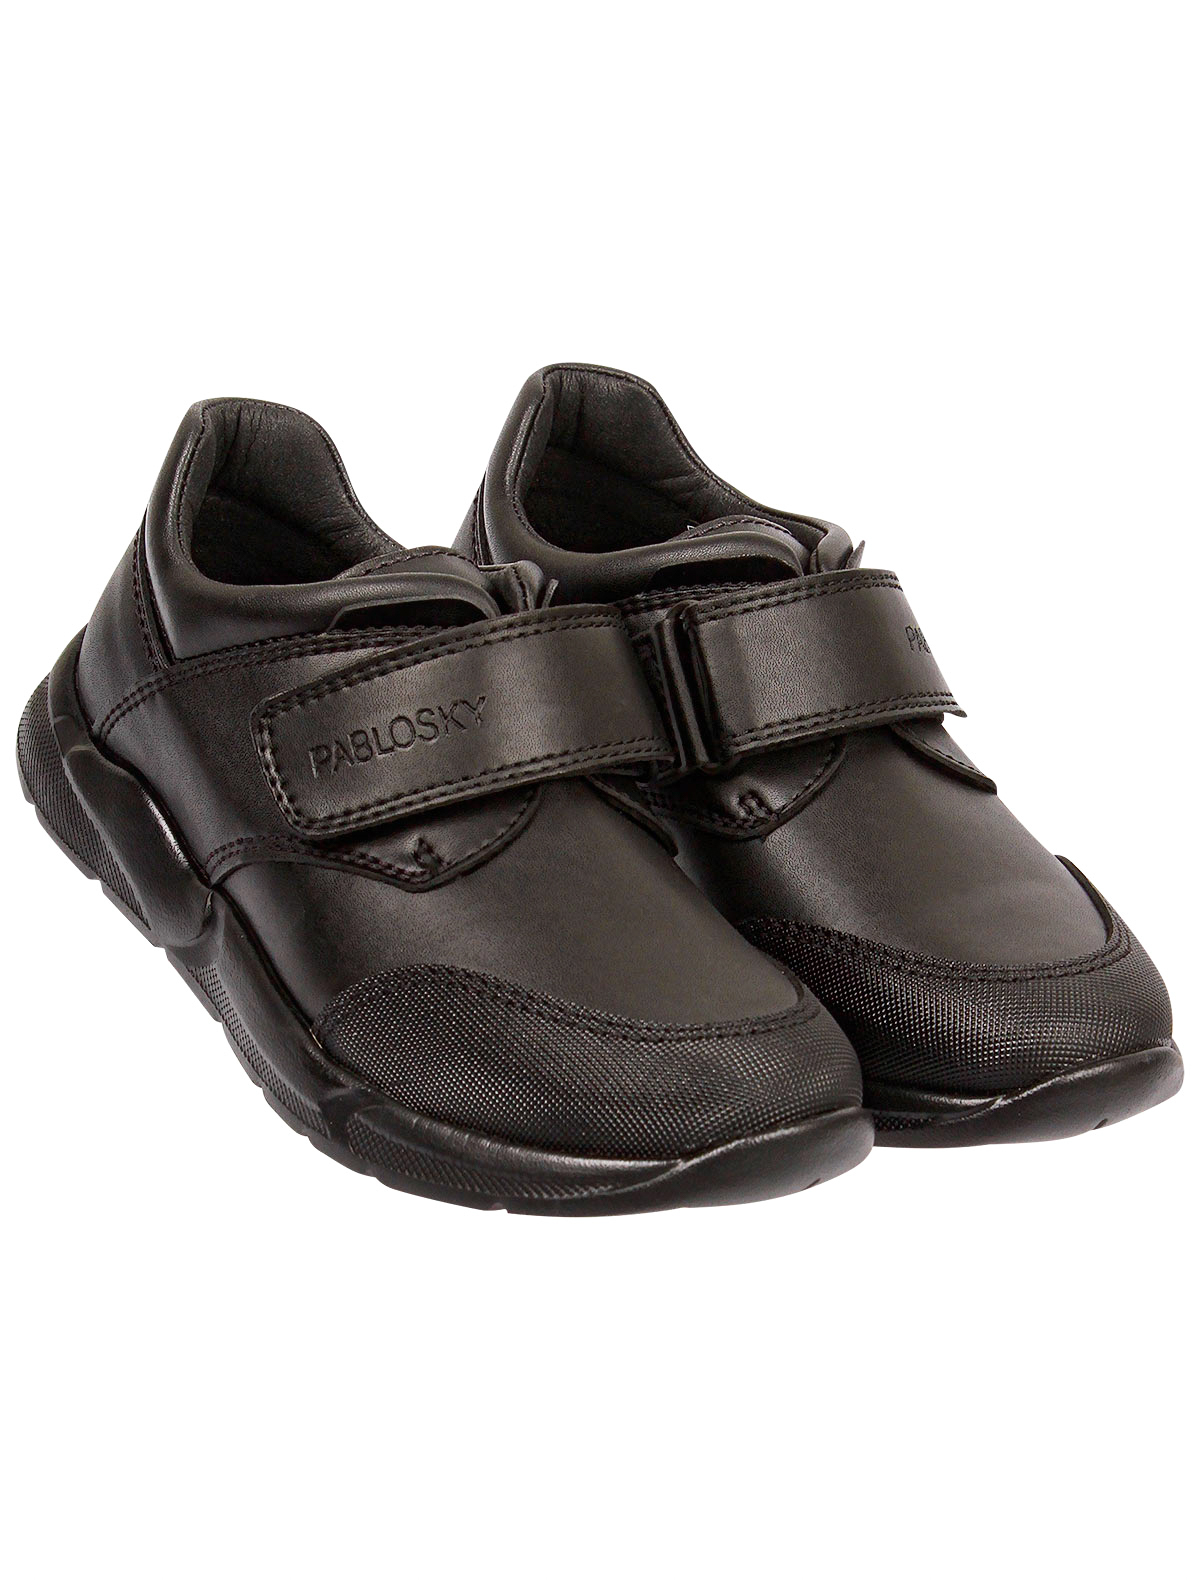 ботинки pablosky, черные